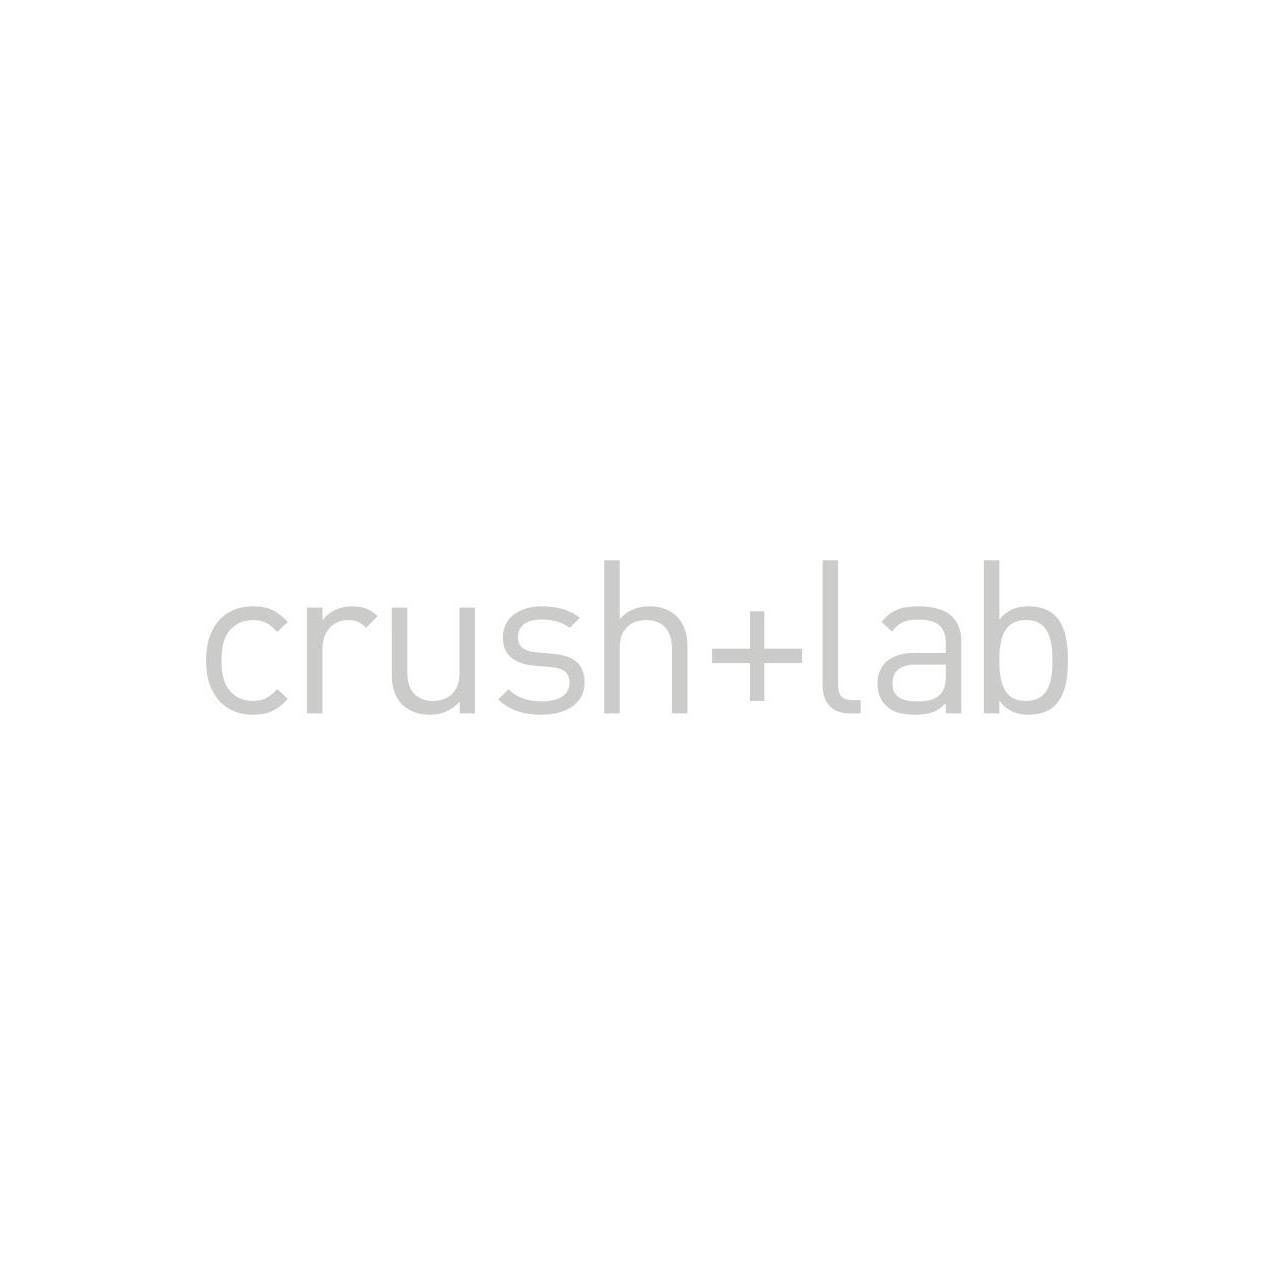 crush+lab prods